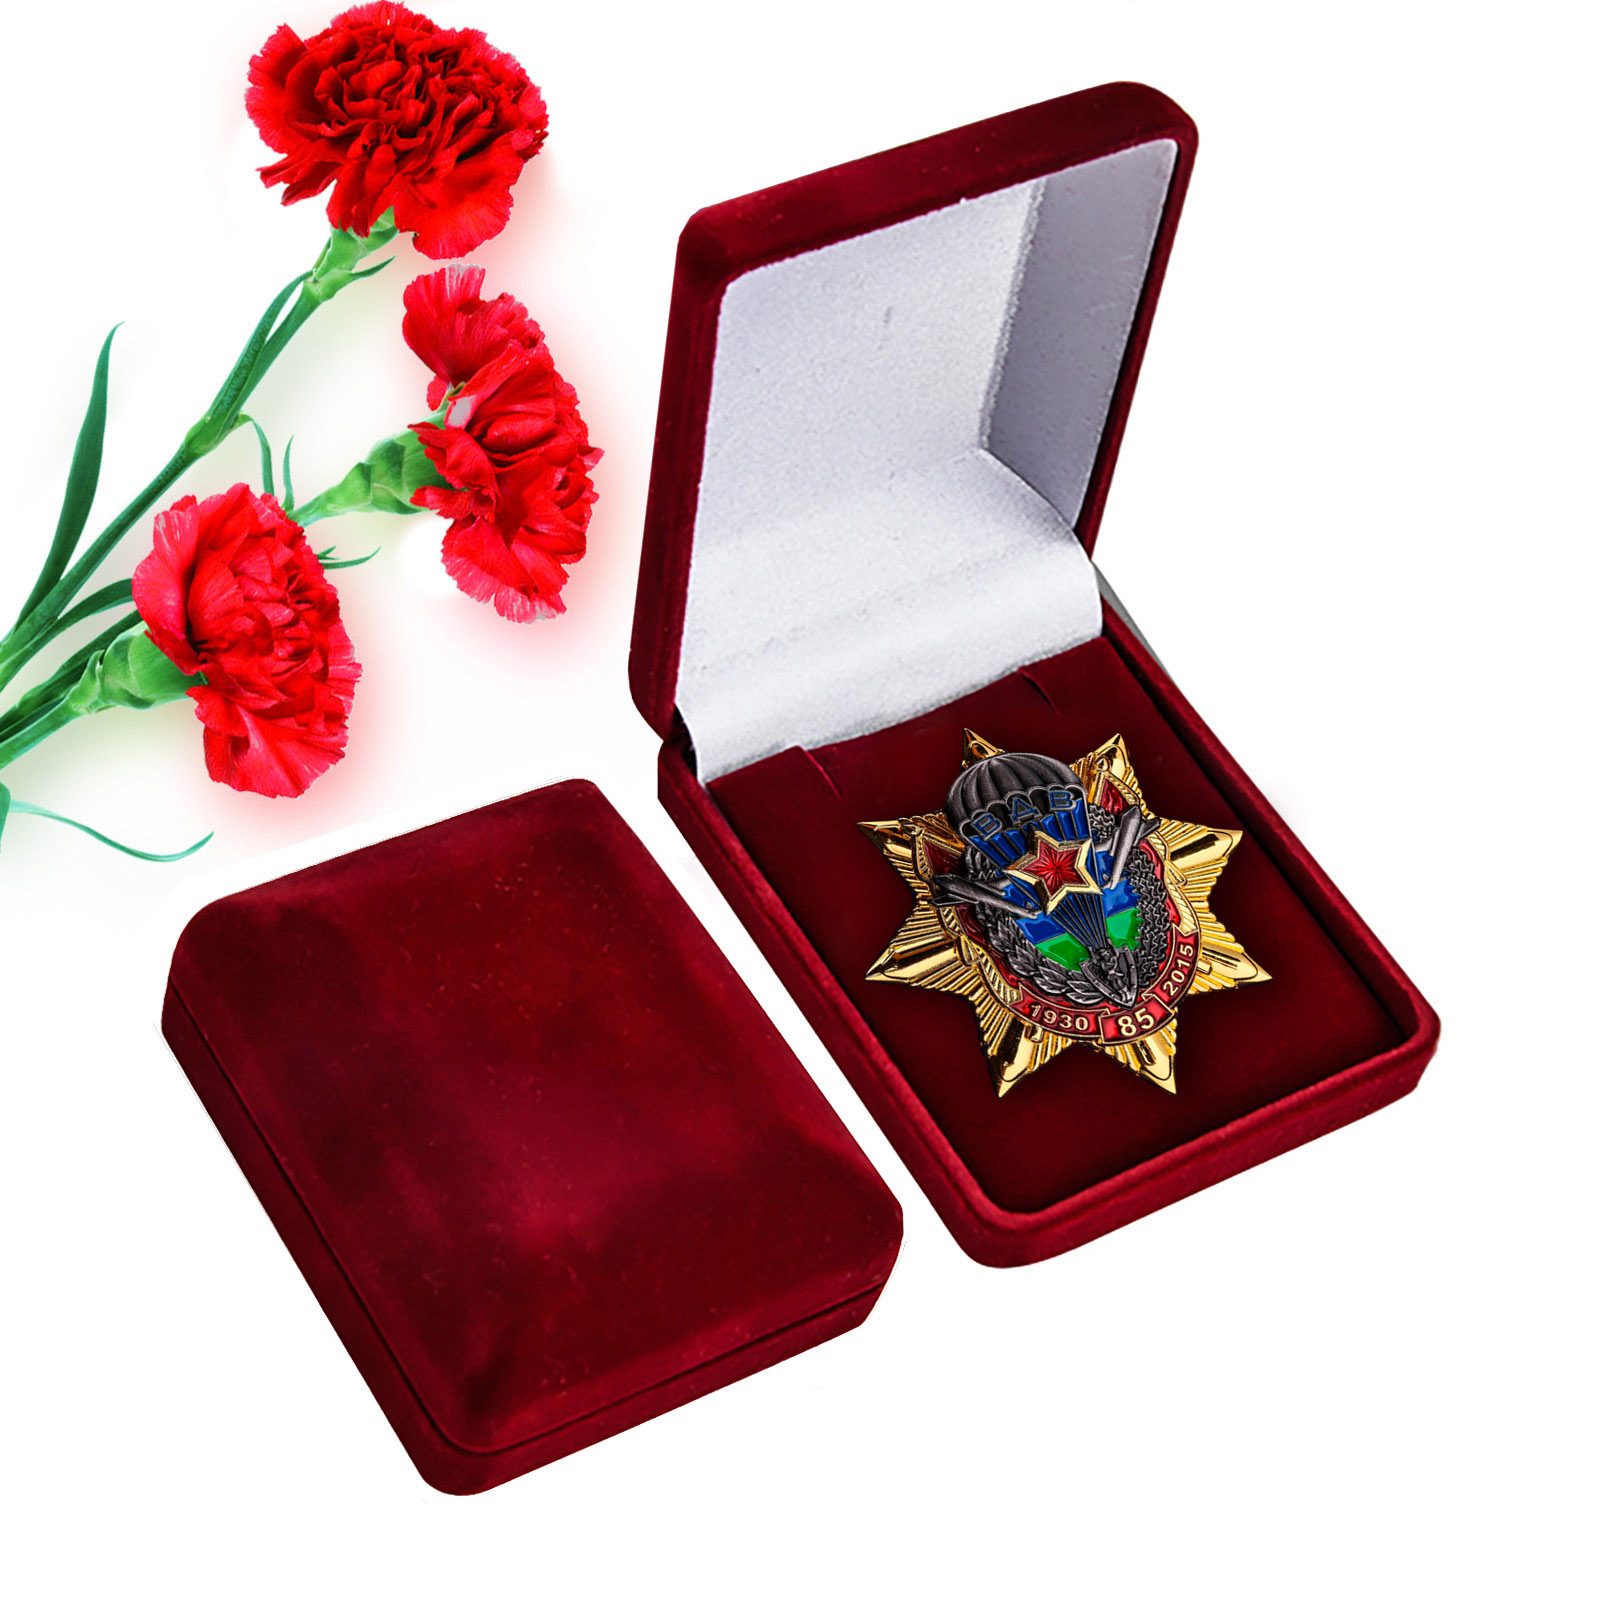 Купить памятный орден Звезда ВДВ в подарок